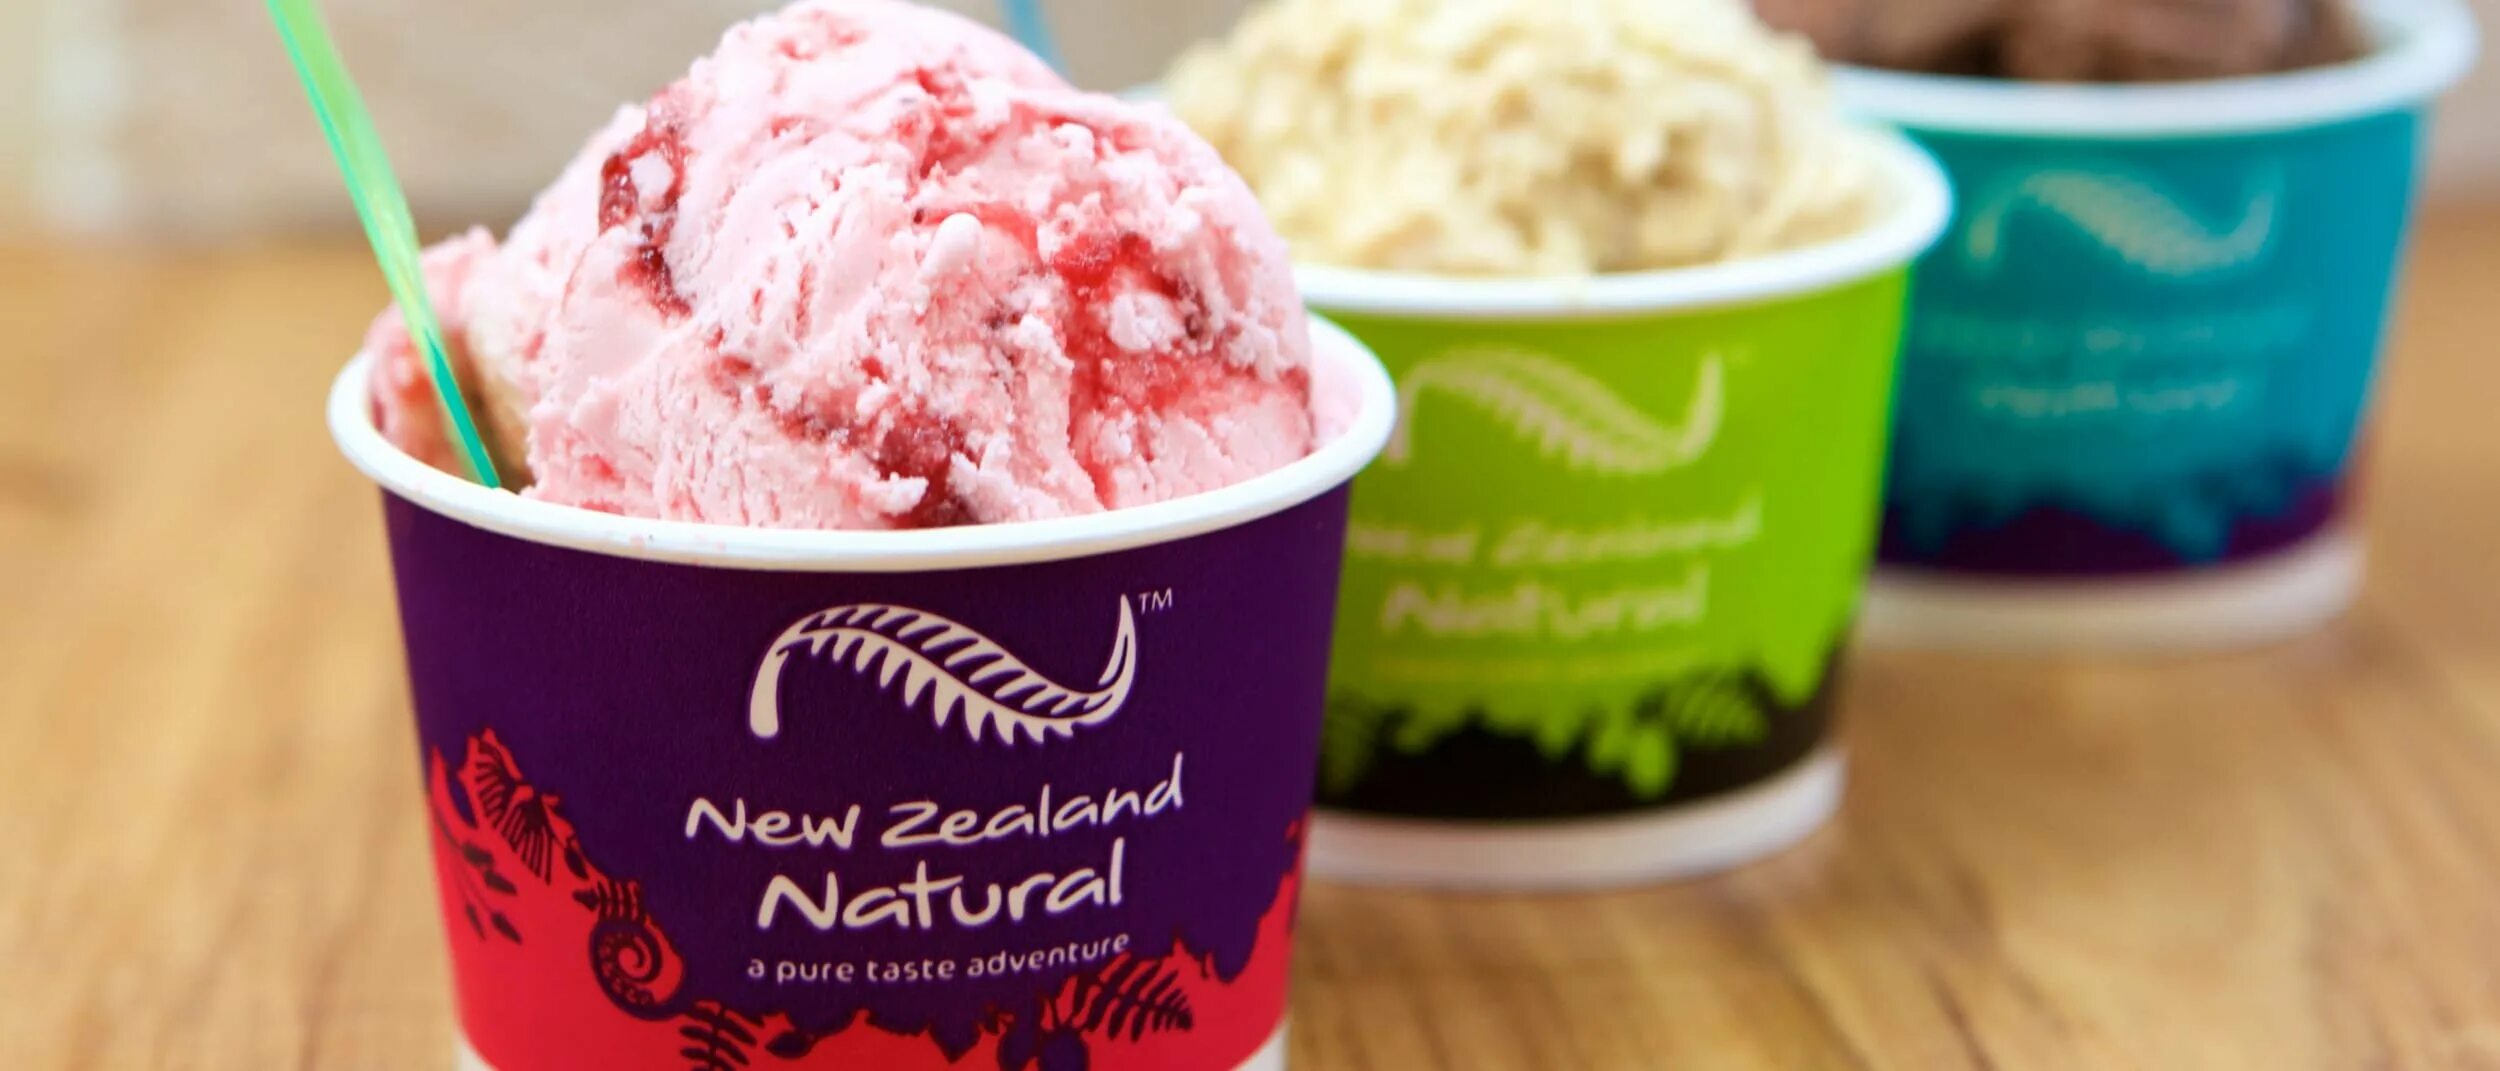 Новозеландское мороженое. Мороженое в ведре. Мороженое с пробиотиками. Ice cream new